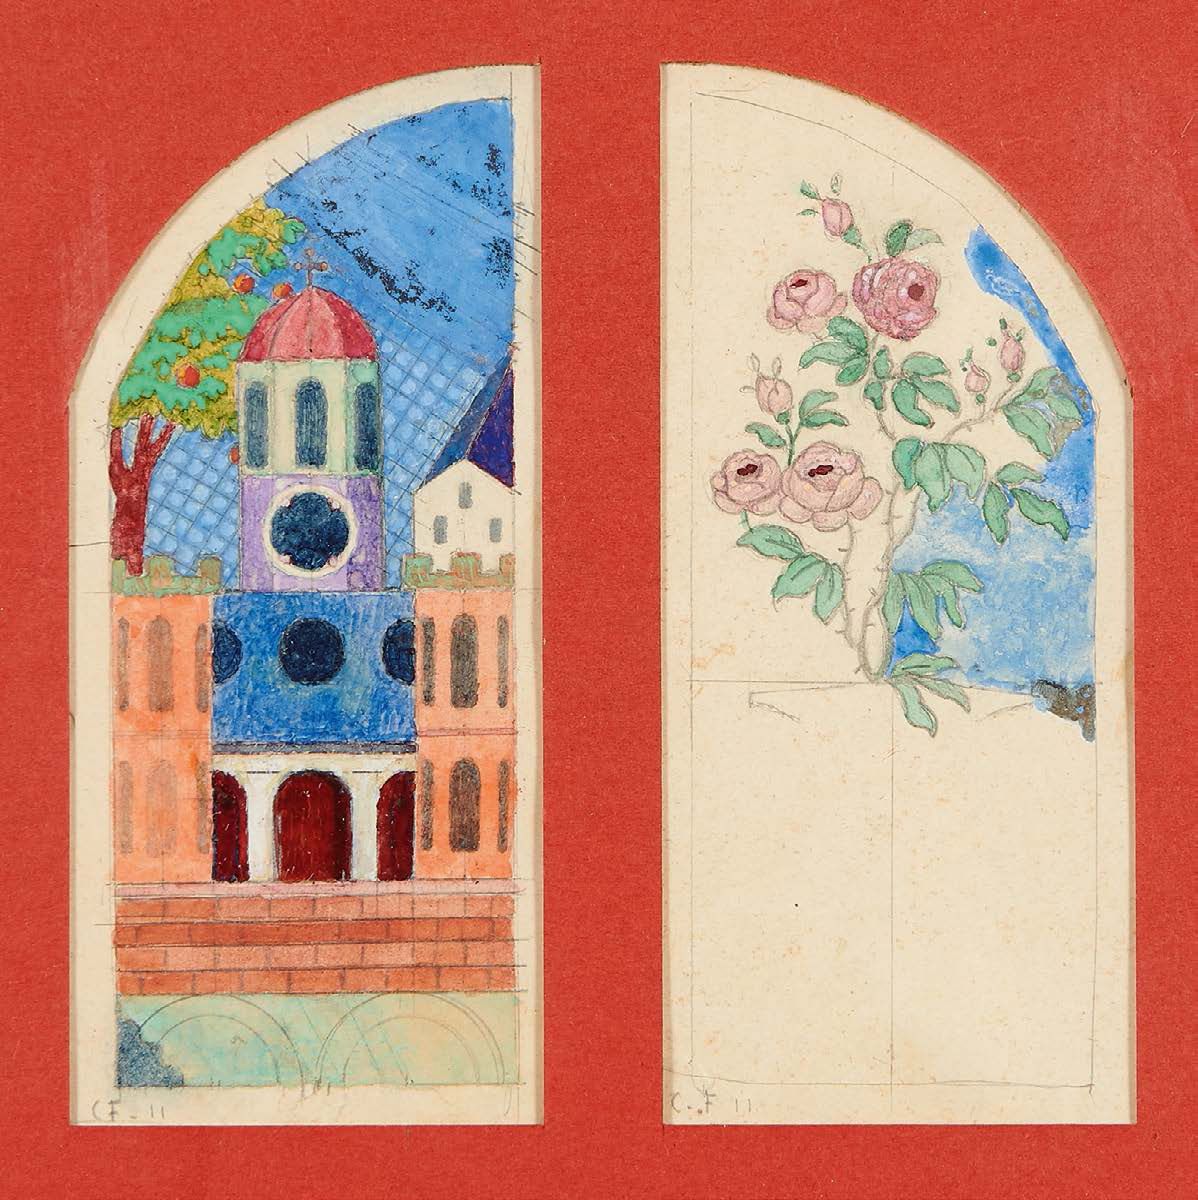 Charles FILIGER (1863-1928) 
Die Kirche, 1911
Rosier, 1911
Zwei Aquarelle auf Bl&hellip;